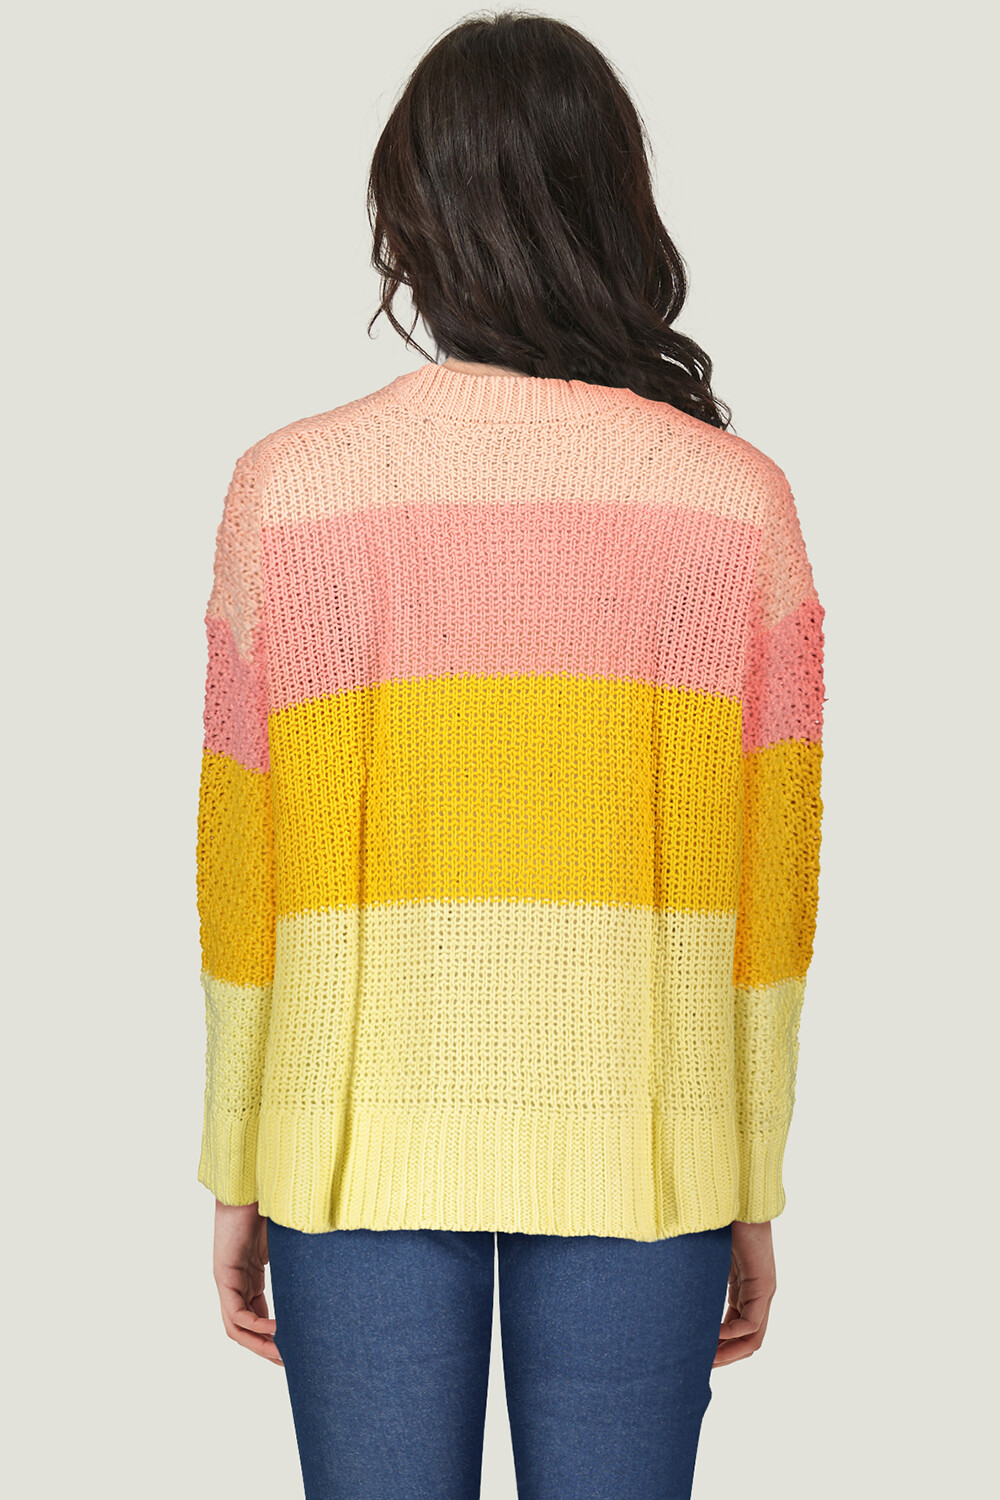 Sweater Ender 0203 Estampado 2